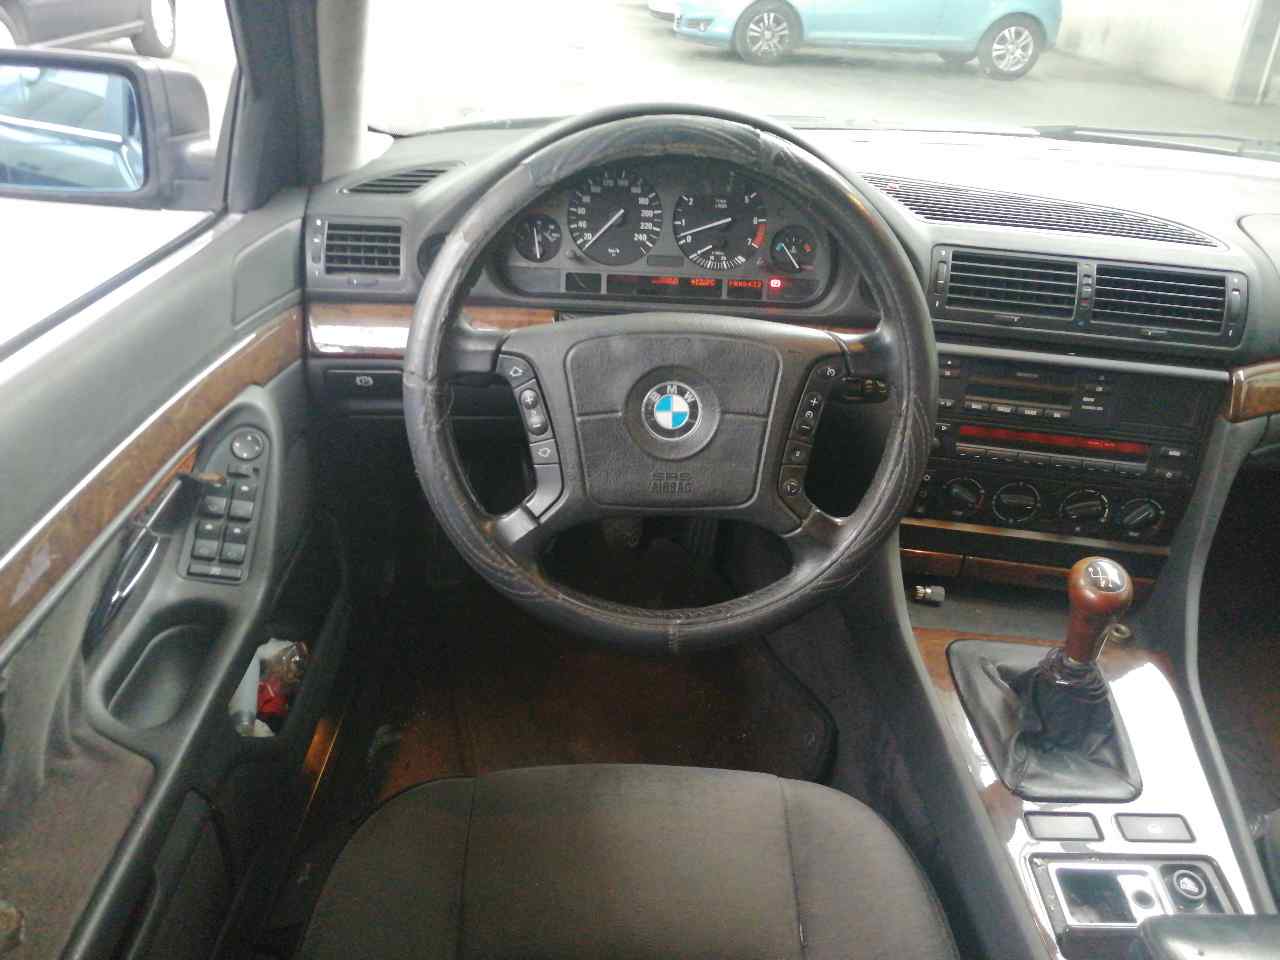 BMW 7 Series E38 (1994-2001) Front Left Seatbelt 8162703, 4PUERTAS 19788744